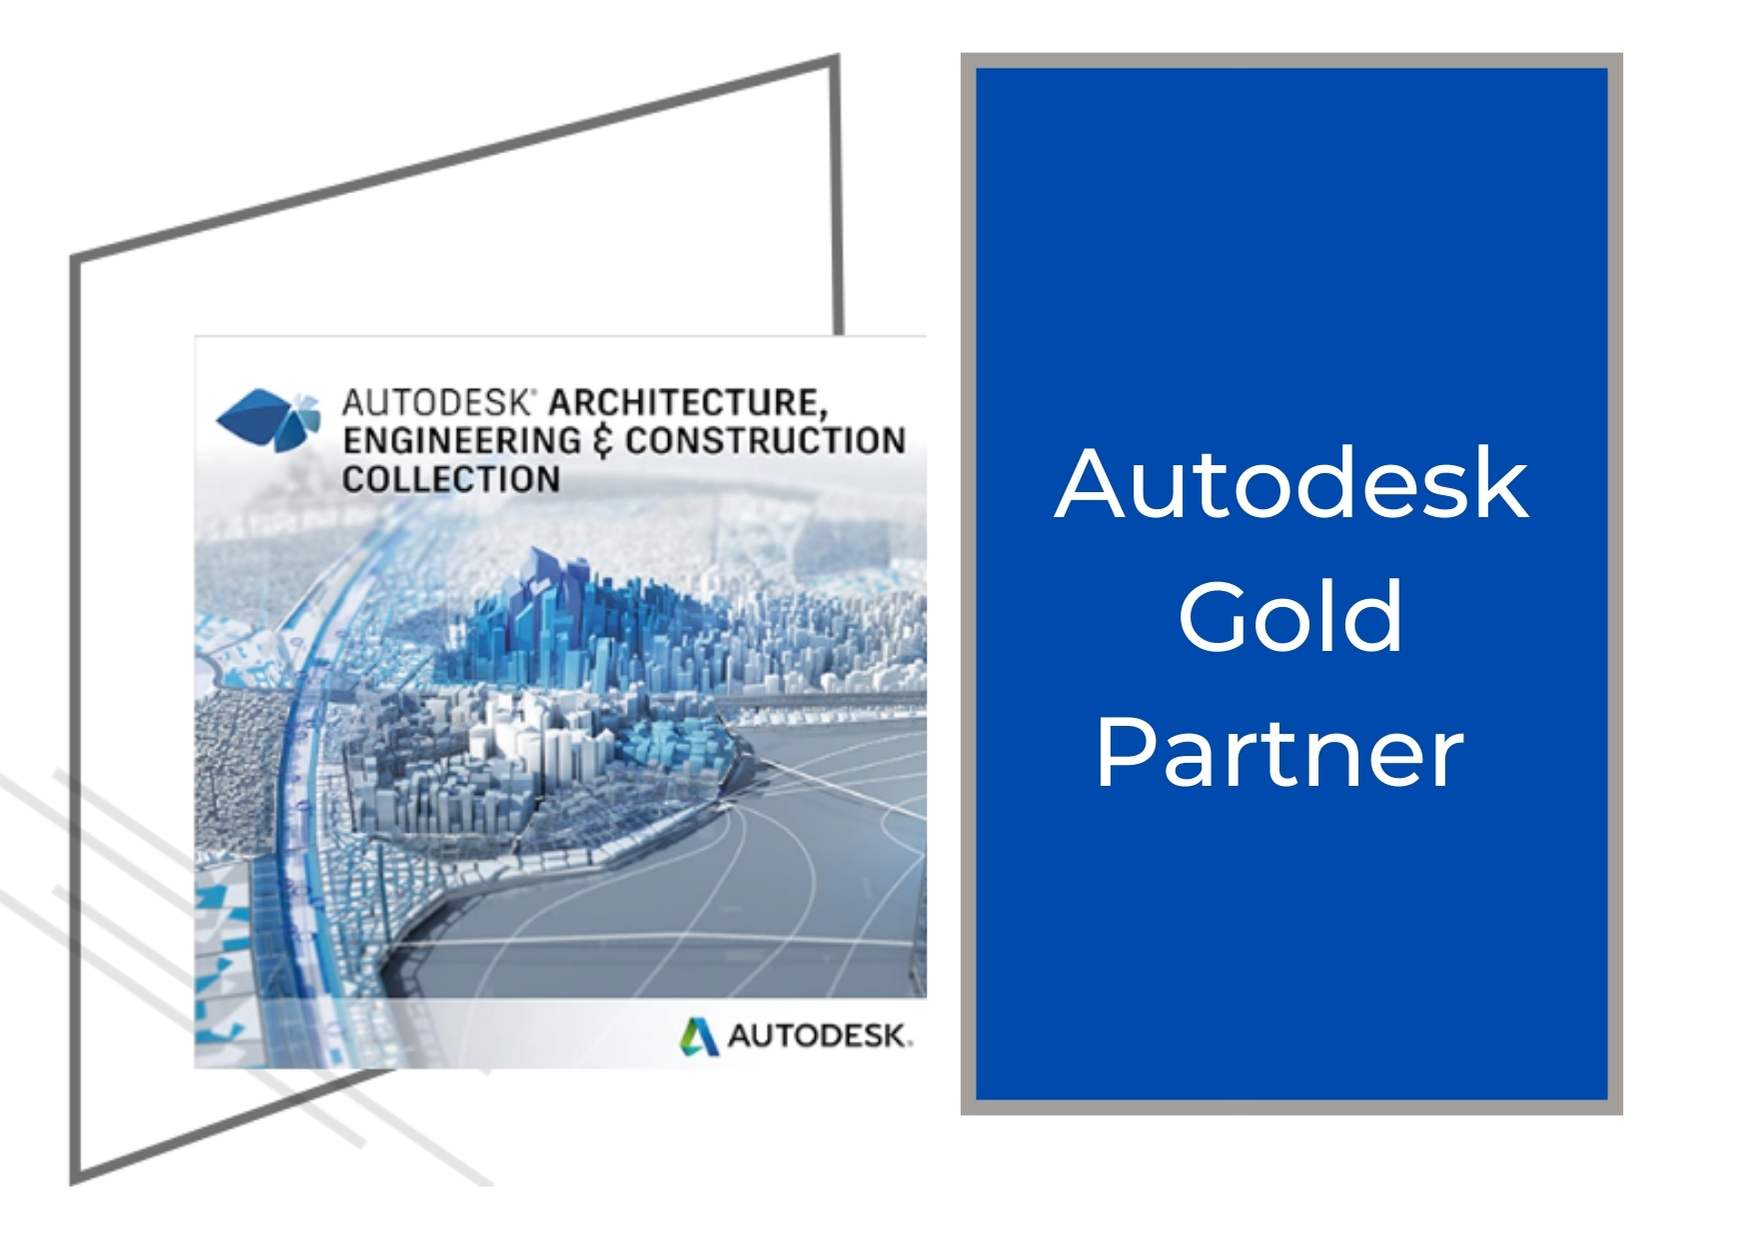 Autodesk Gold partner